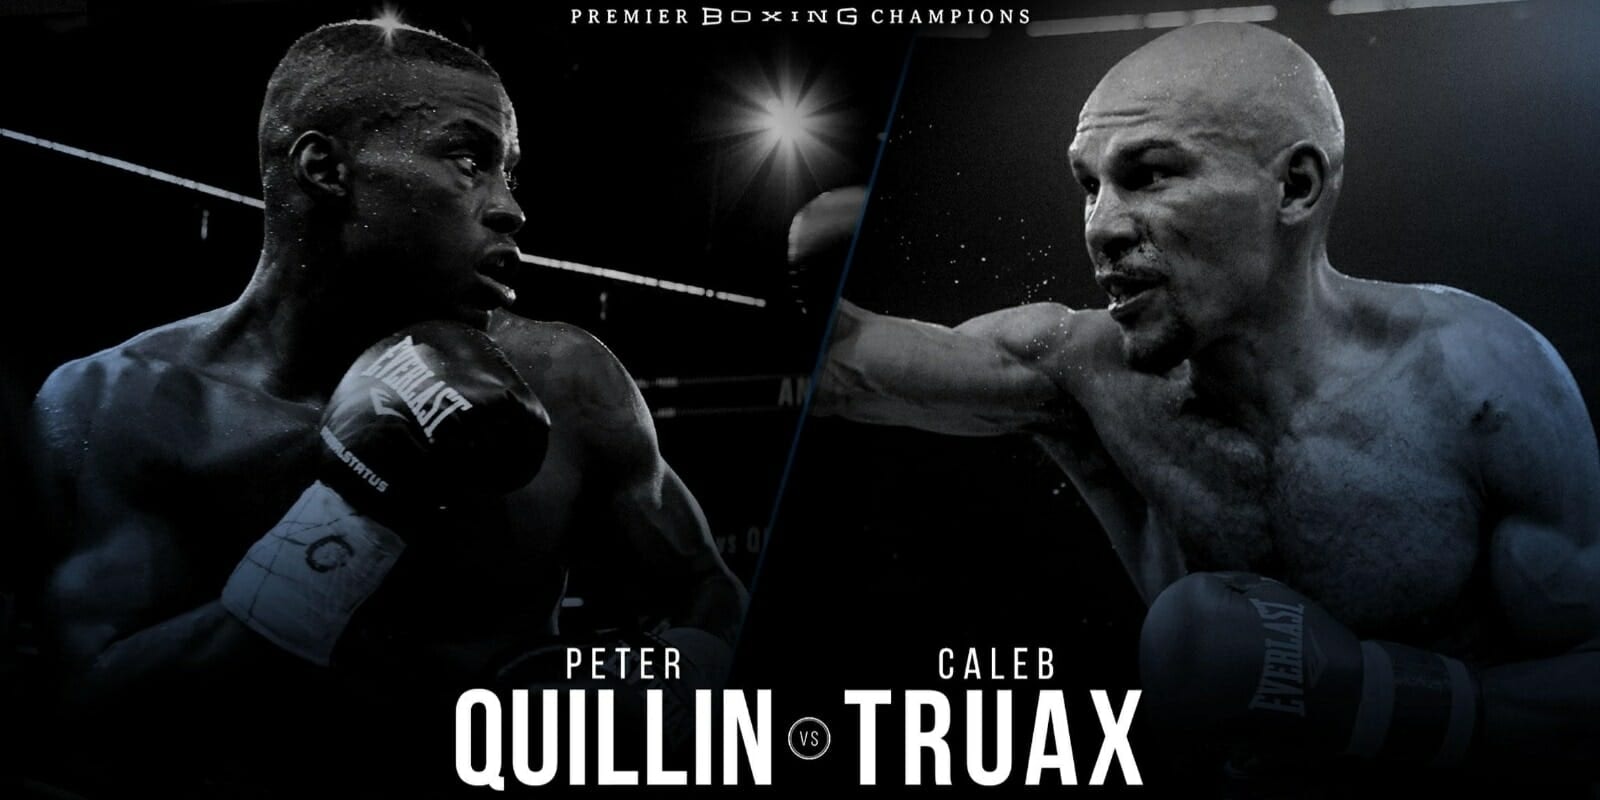 Caleb Truax vs Peter Quillin live stream free FS1